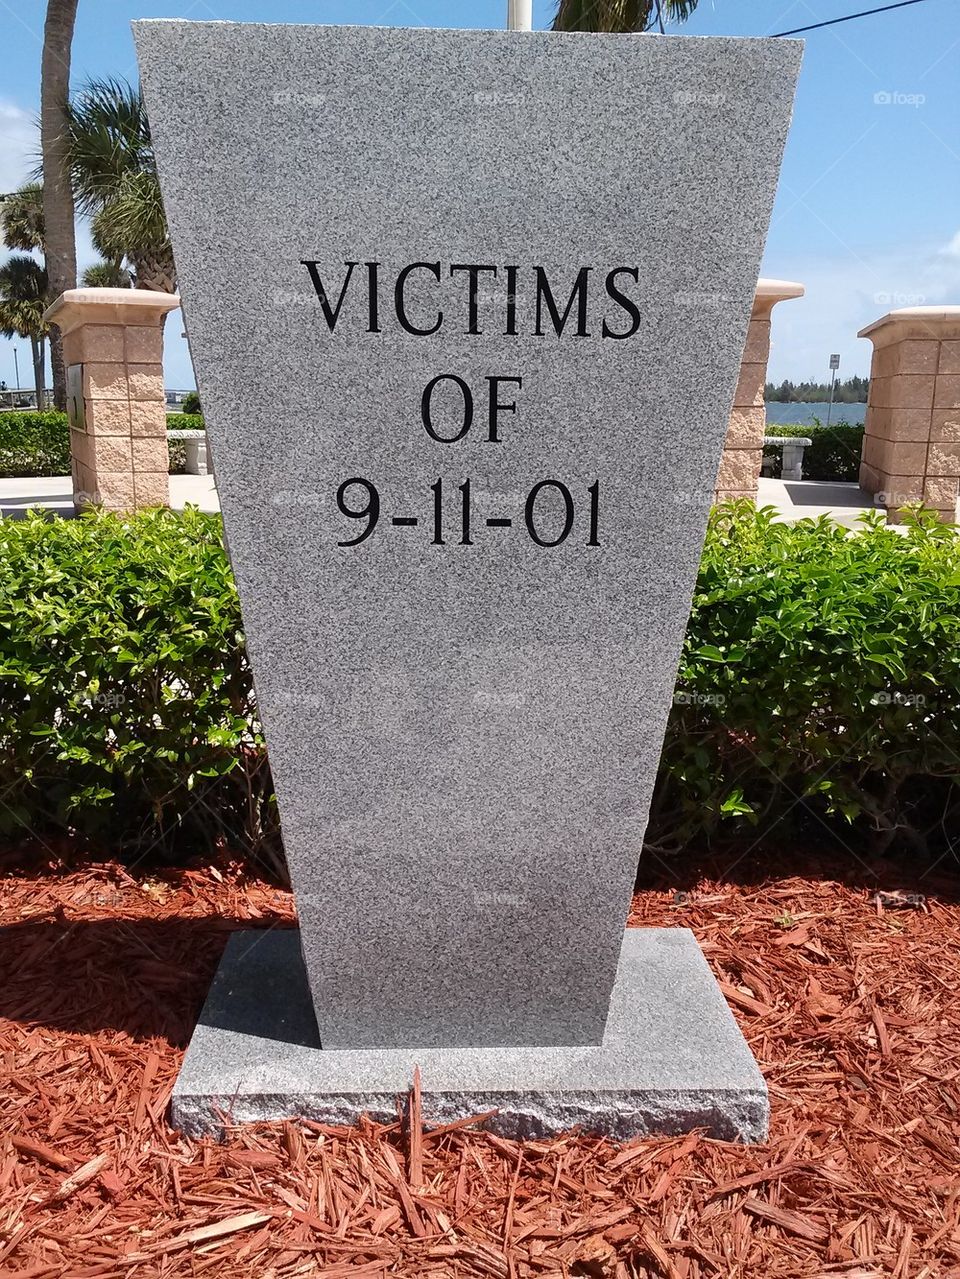 9-11-01 memorial 